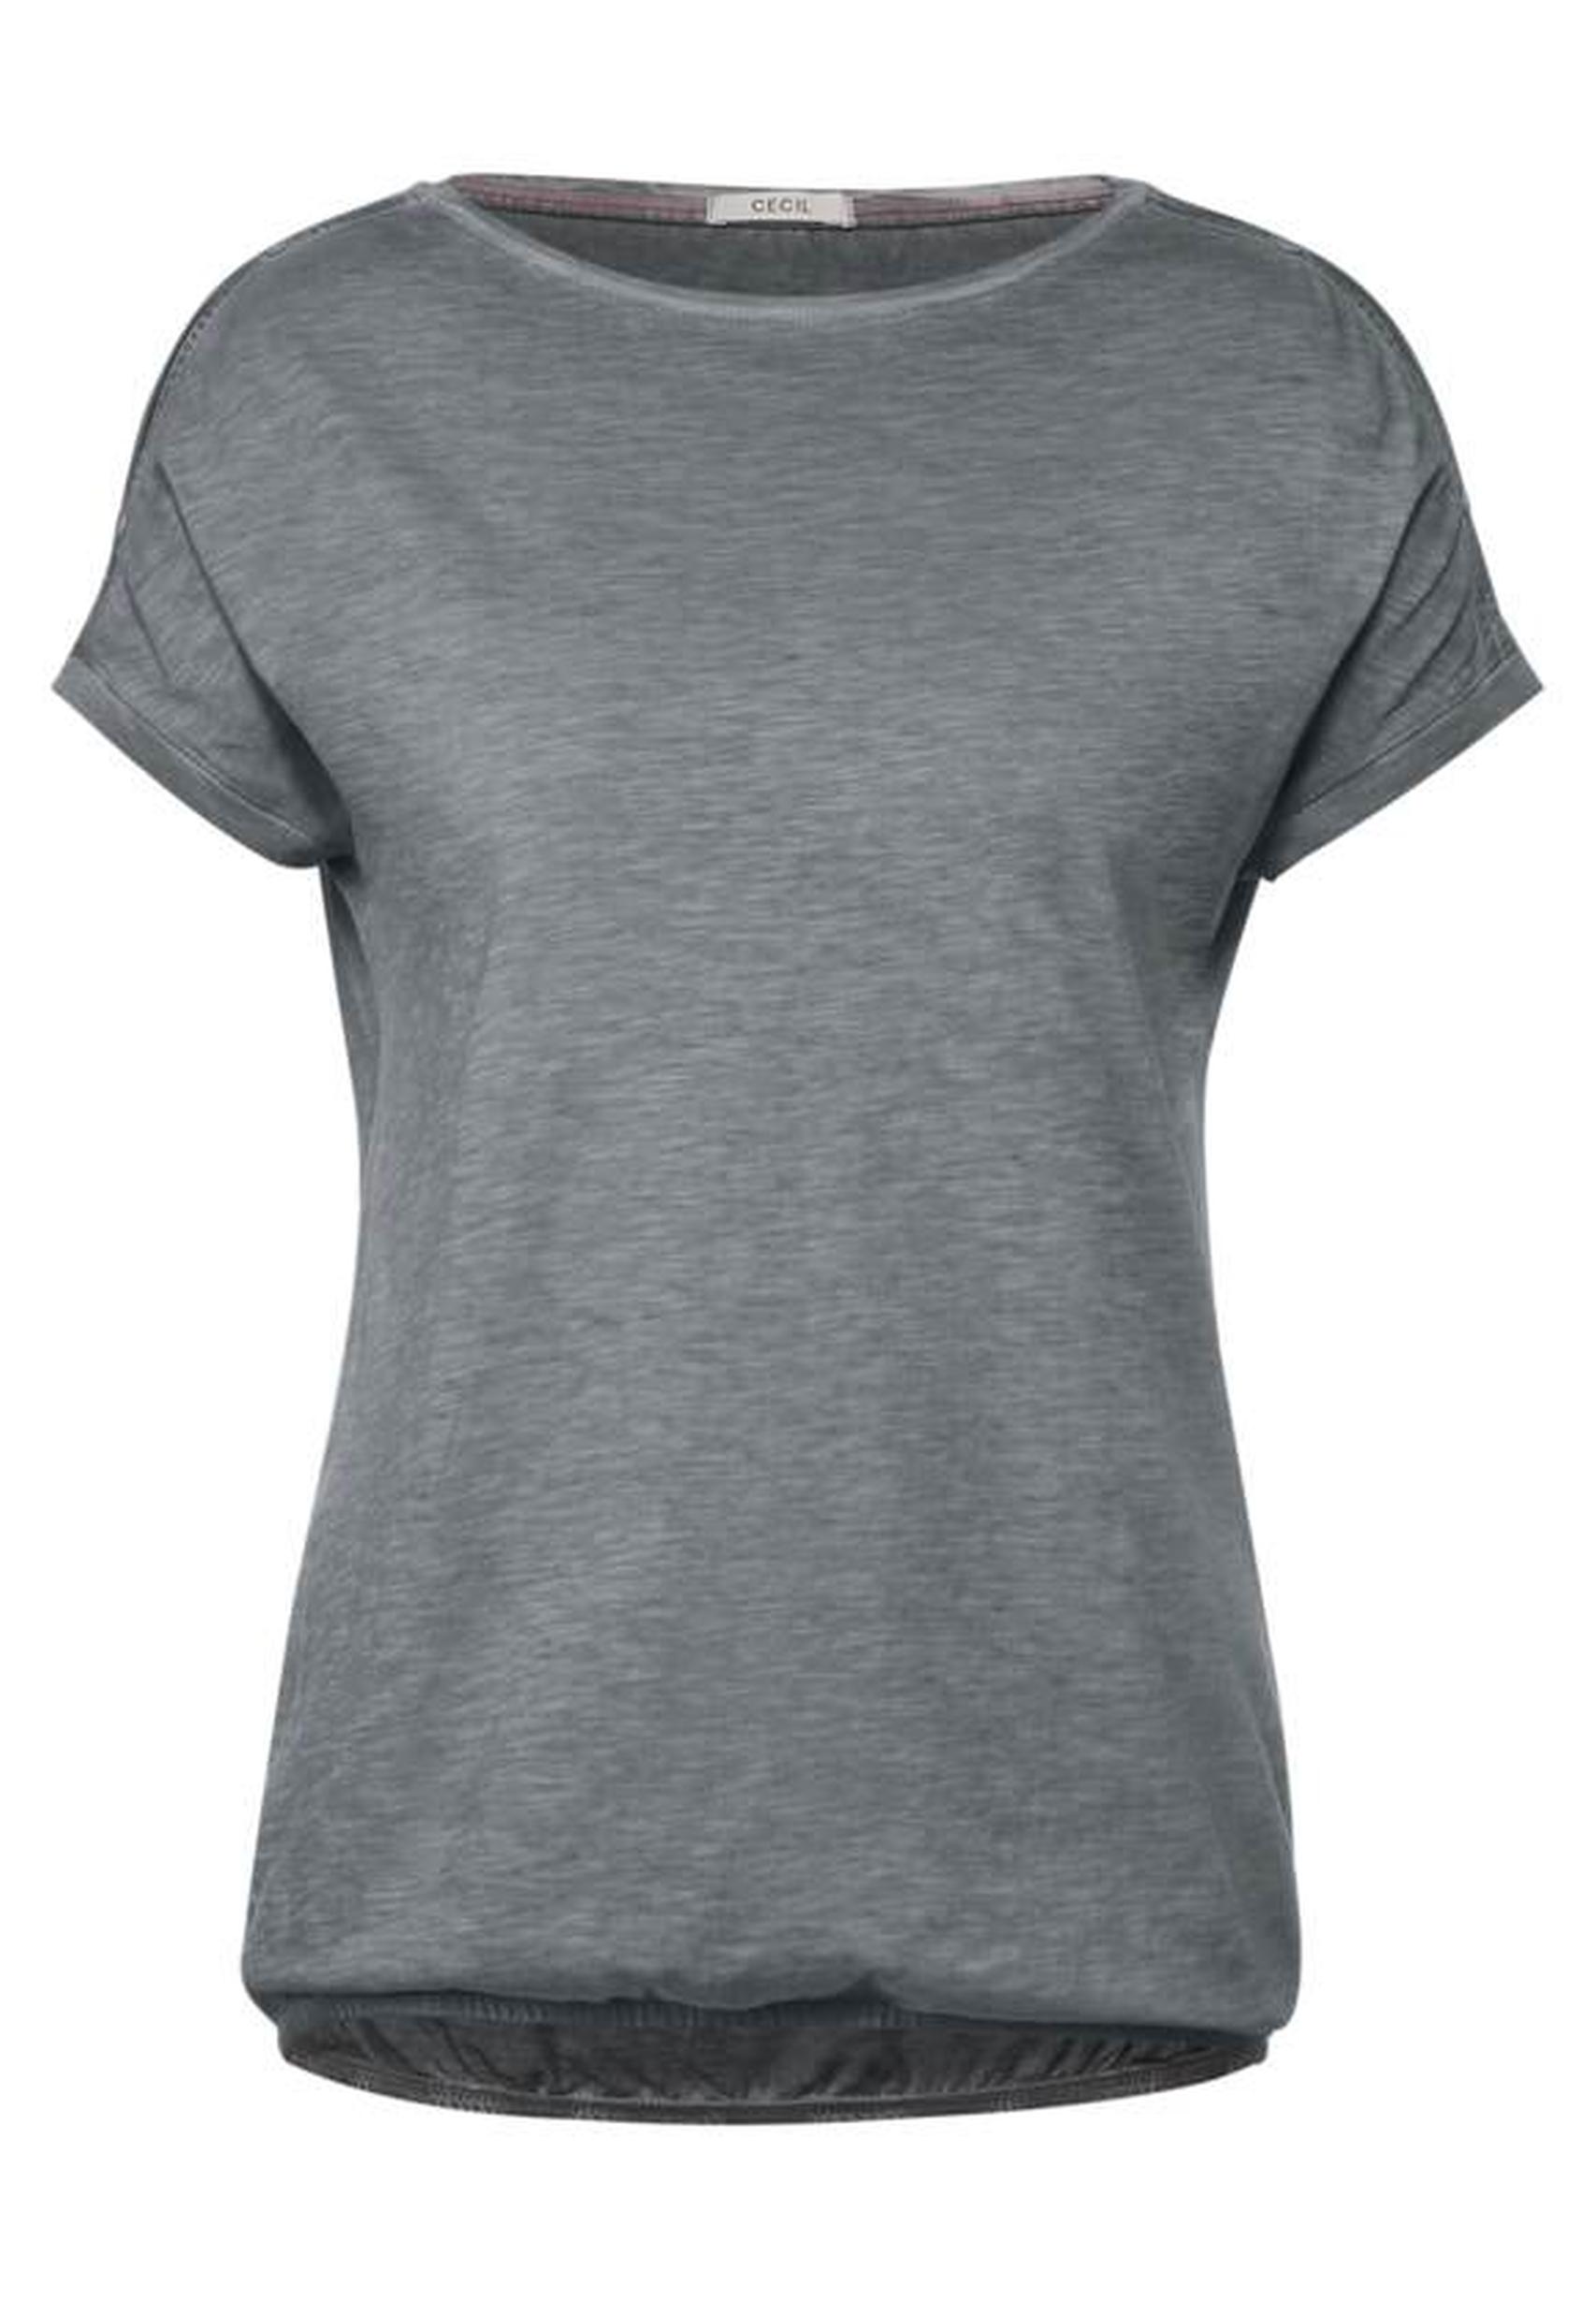 Modisches Shirt aus der Kollektion von CECIL in carbon grey